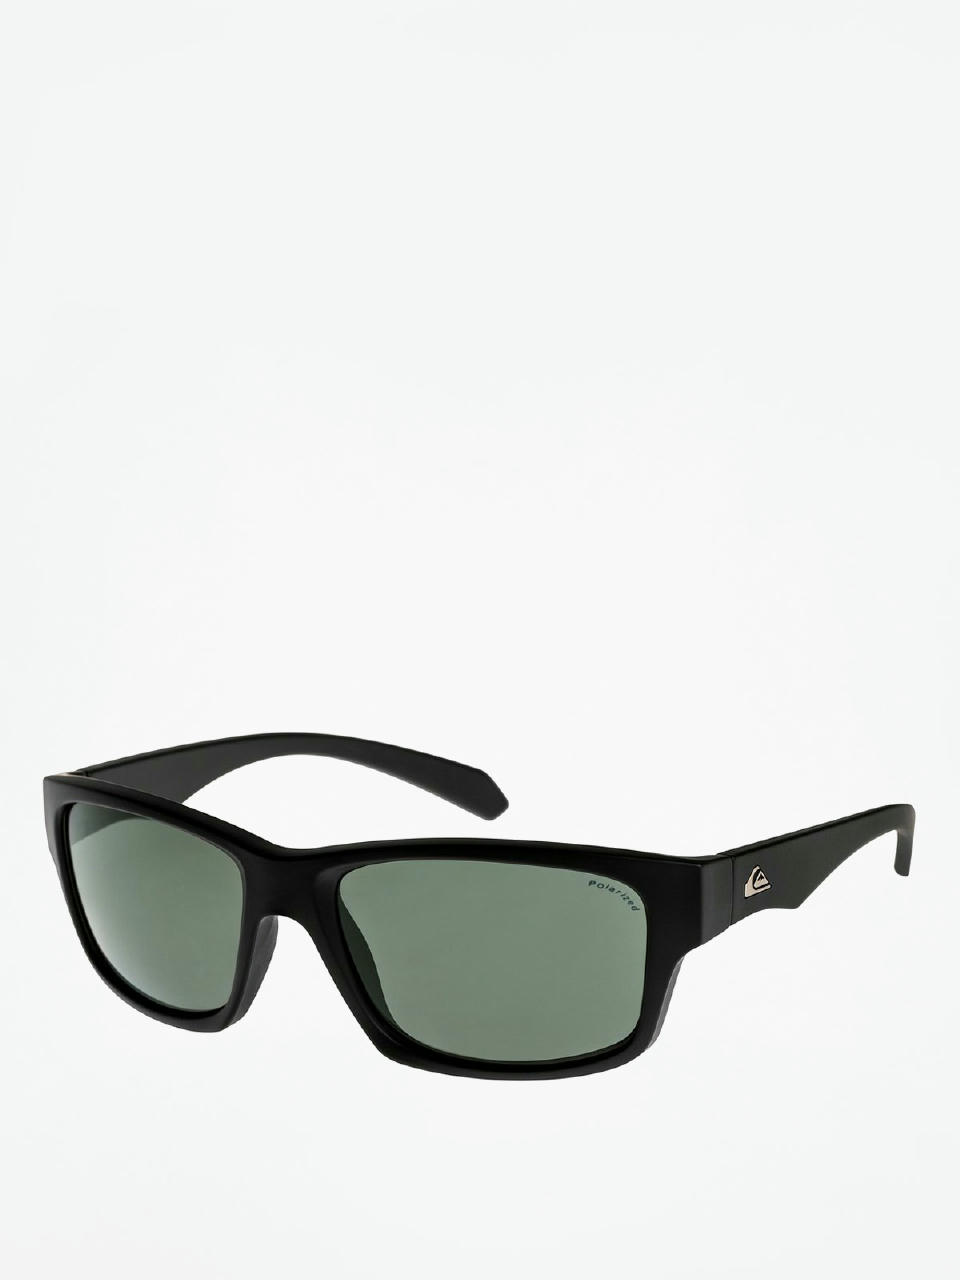 Quiksilver Sunglasses Off Road green) (black/plz